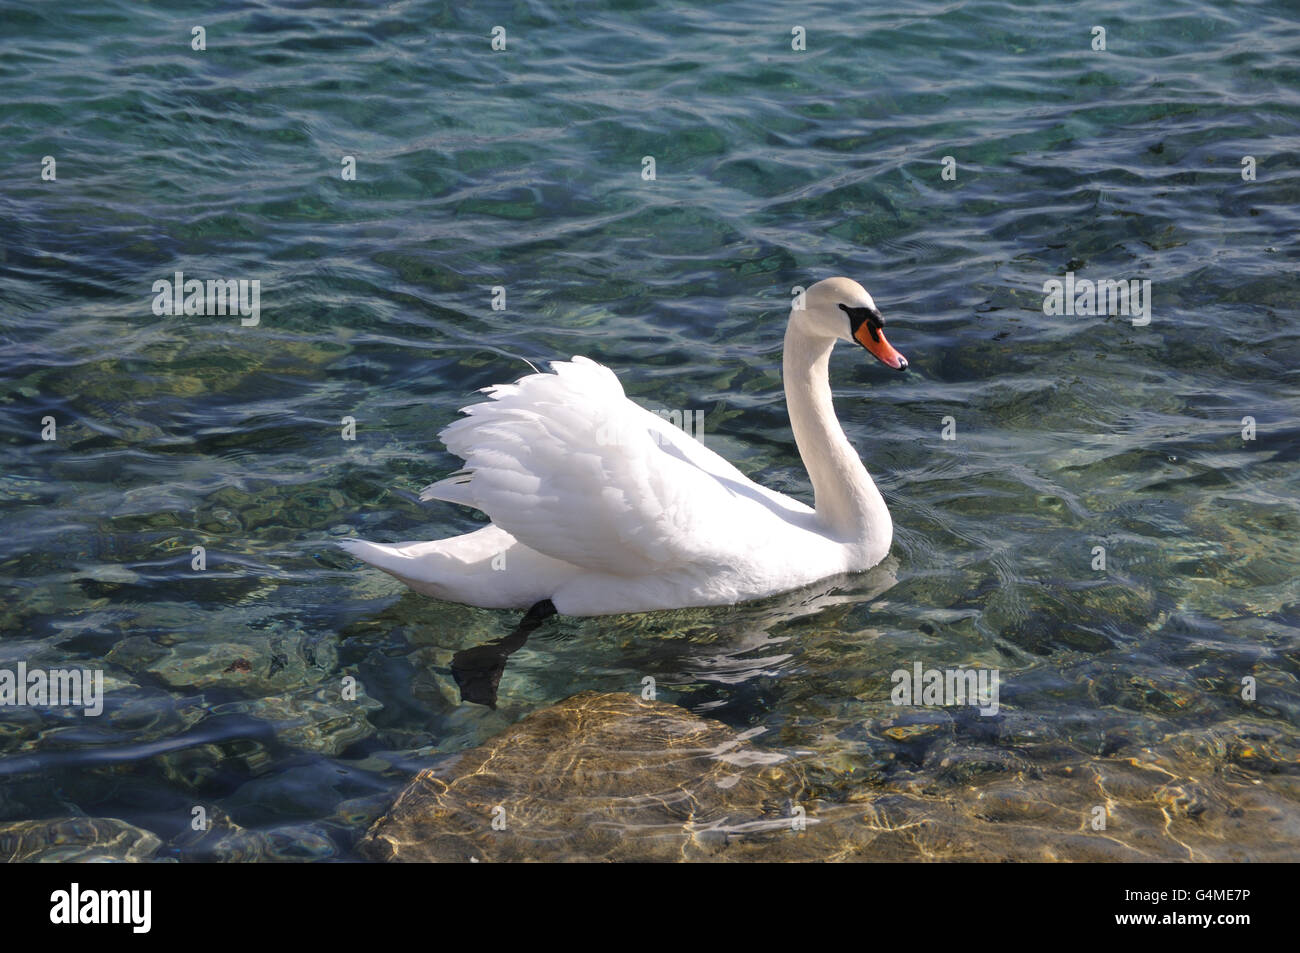 Reine weiße Cob Schwan im schönen klaren Wasser eines Bergsees. Stockfoto